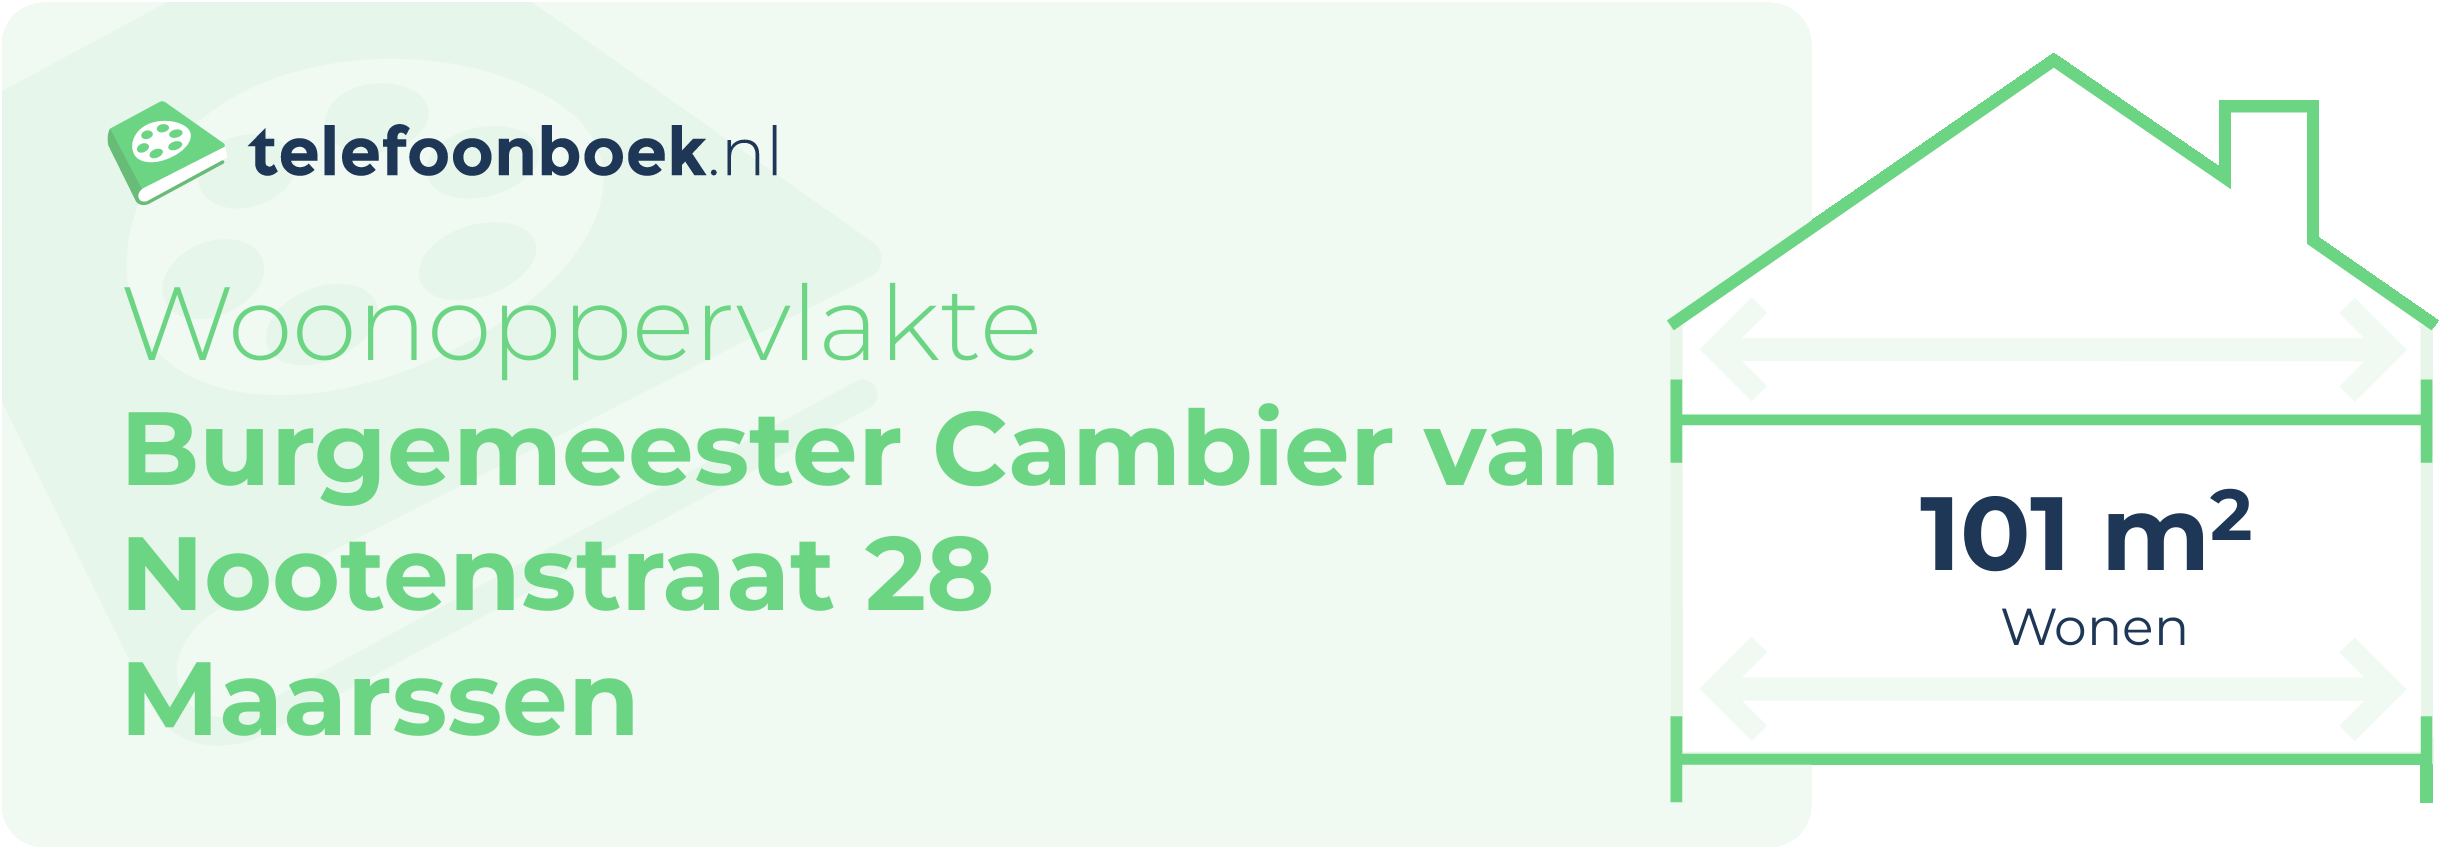 Woonoppervlakte Burgemeester Cambier Van Nootenstraat 28 Maarssen